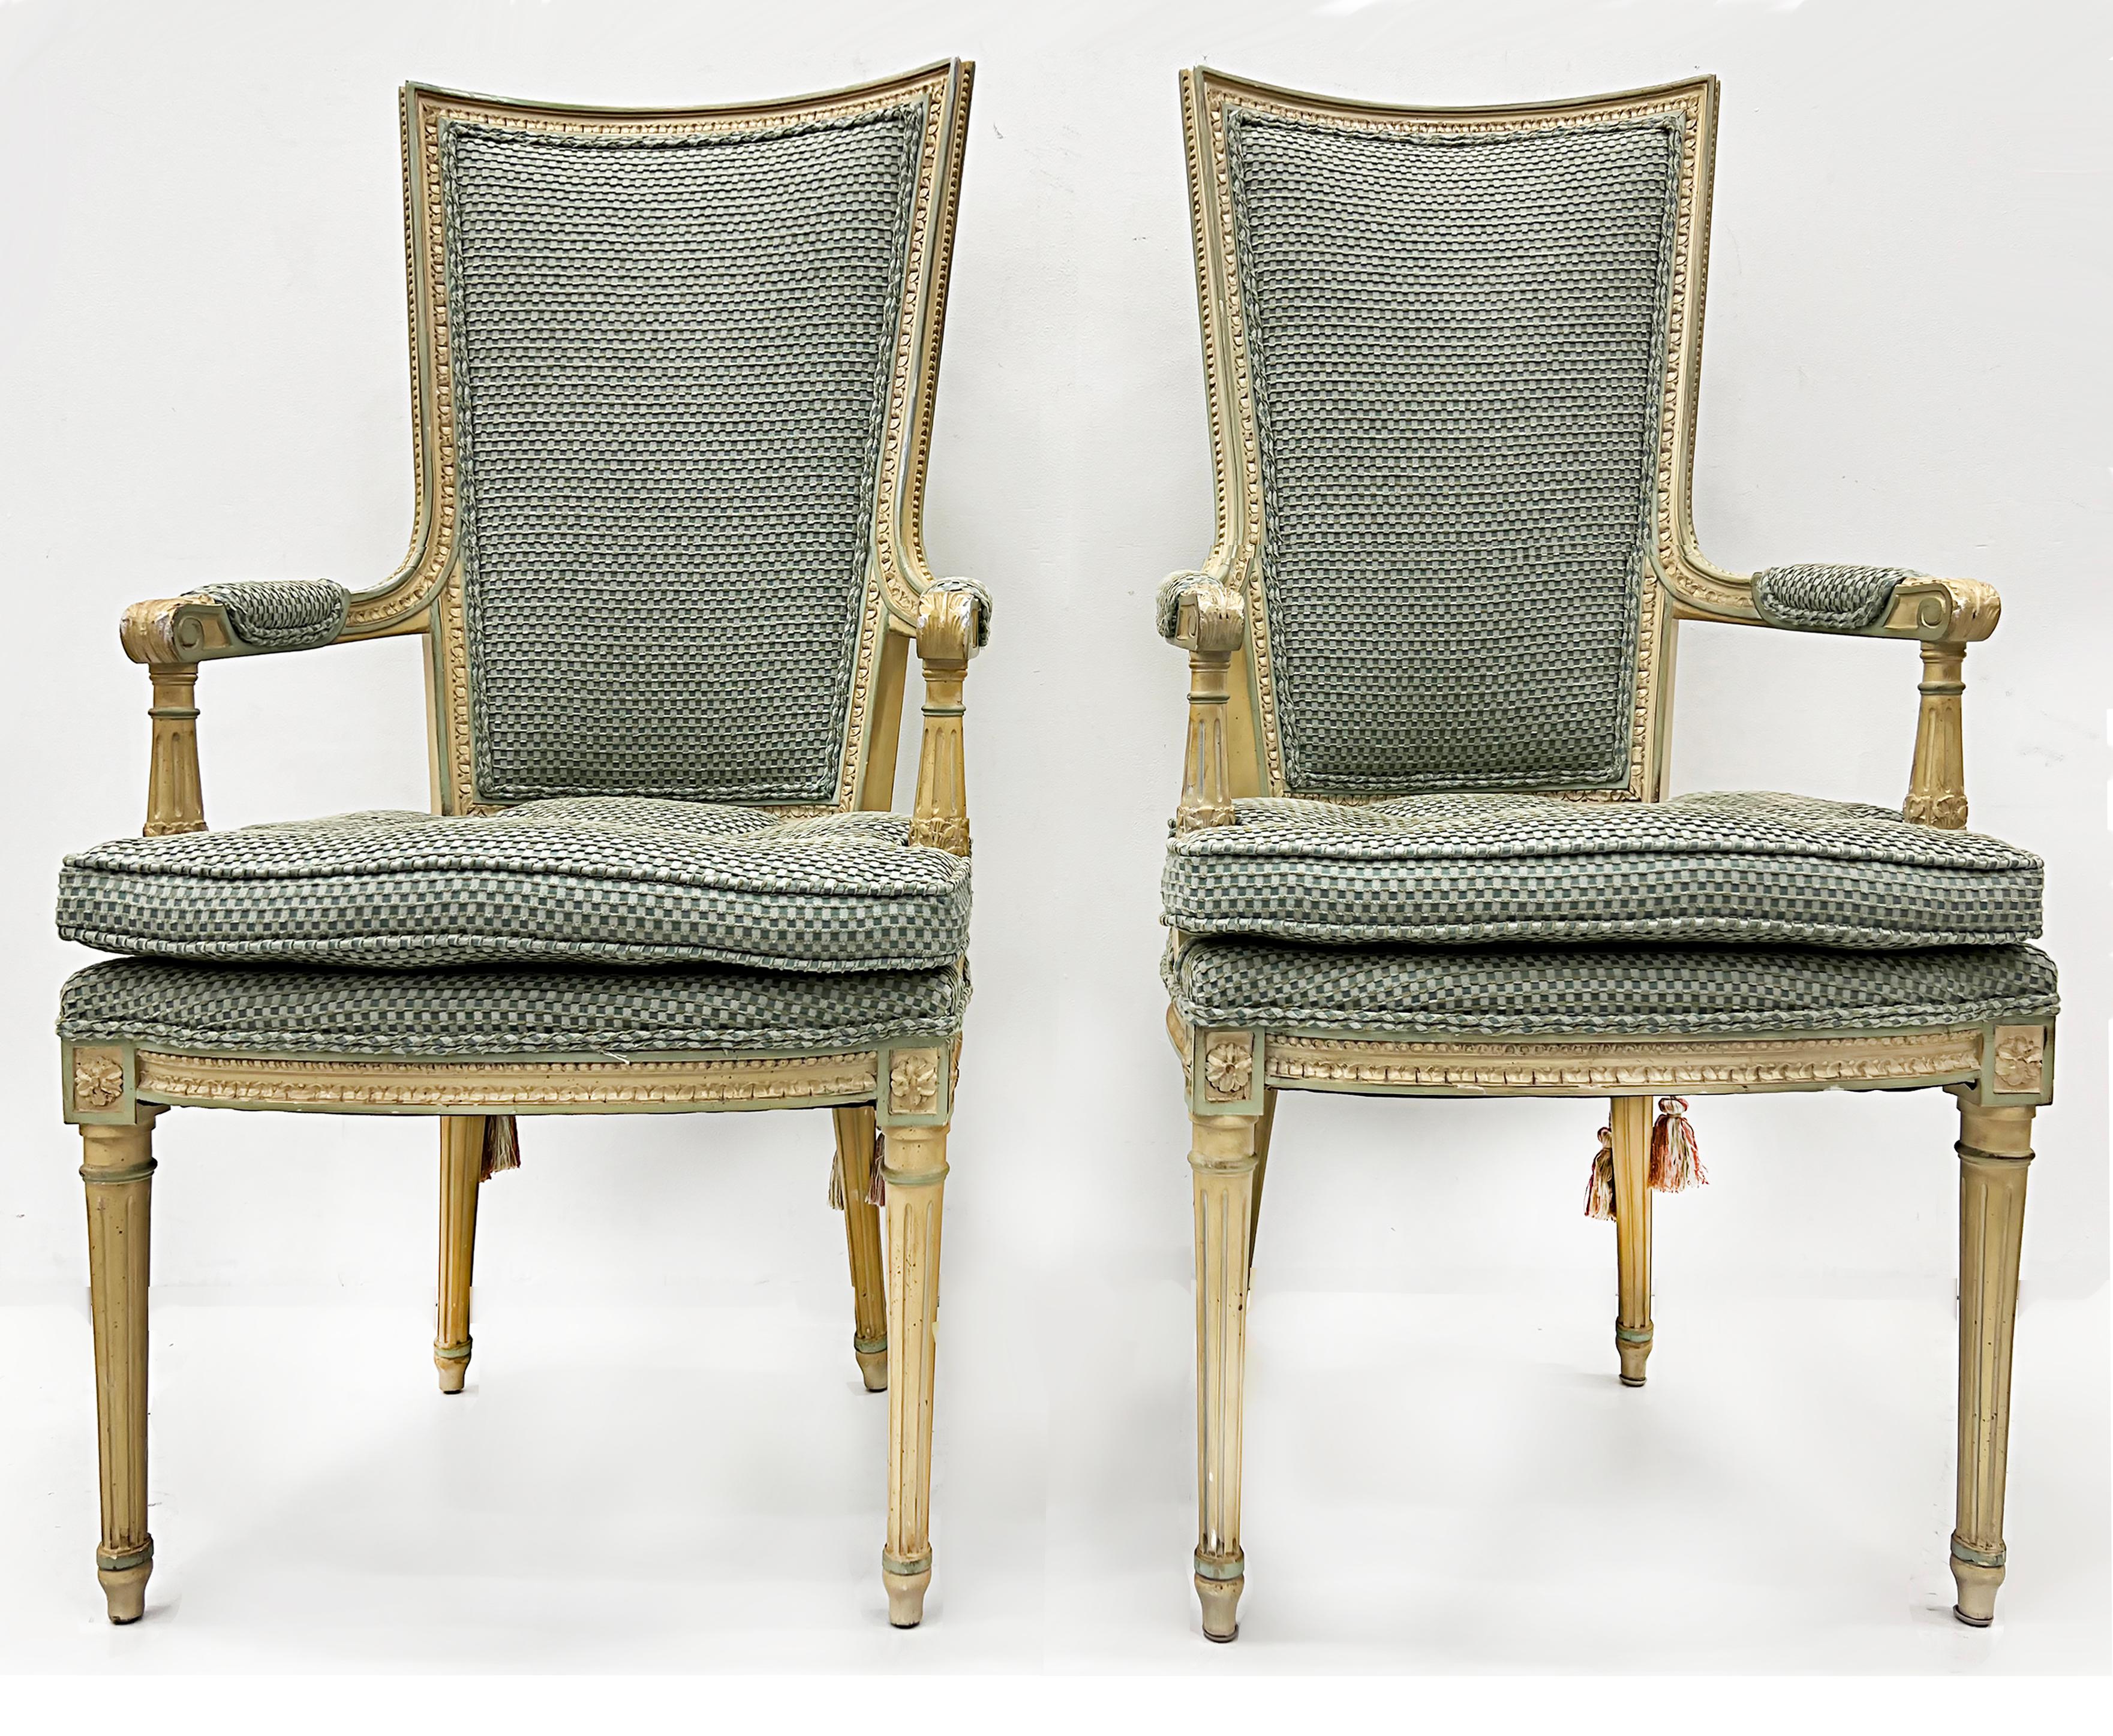 Hollywood Regency Sessel im neoklassischen Stil mit hoher Rückenlehne

Zum Verkauf angeboten wird ein elegantes Paar Hollywood Regency Sessel mit hoher Rückenlehne, die im neoklassischen Stil geschaffen wurden. Die Rahmen sind schön geschnitzt mit